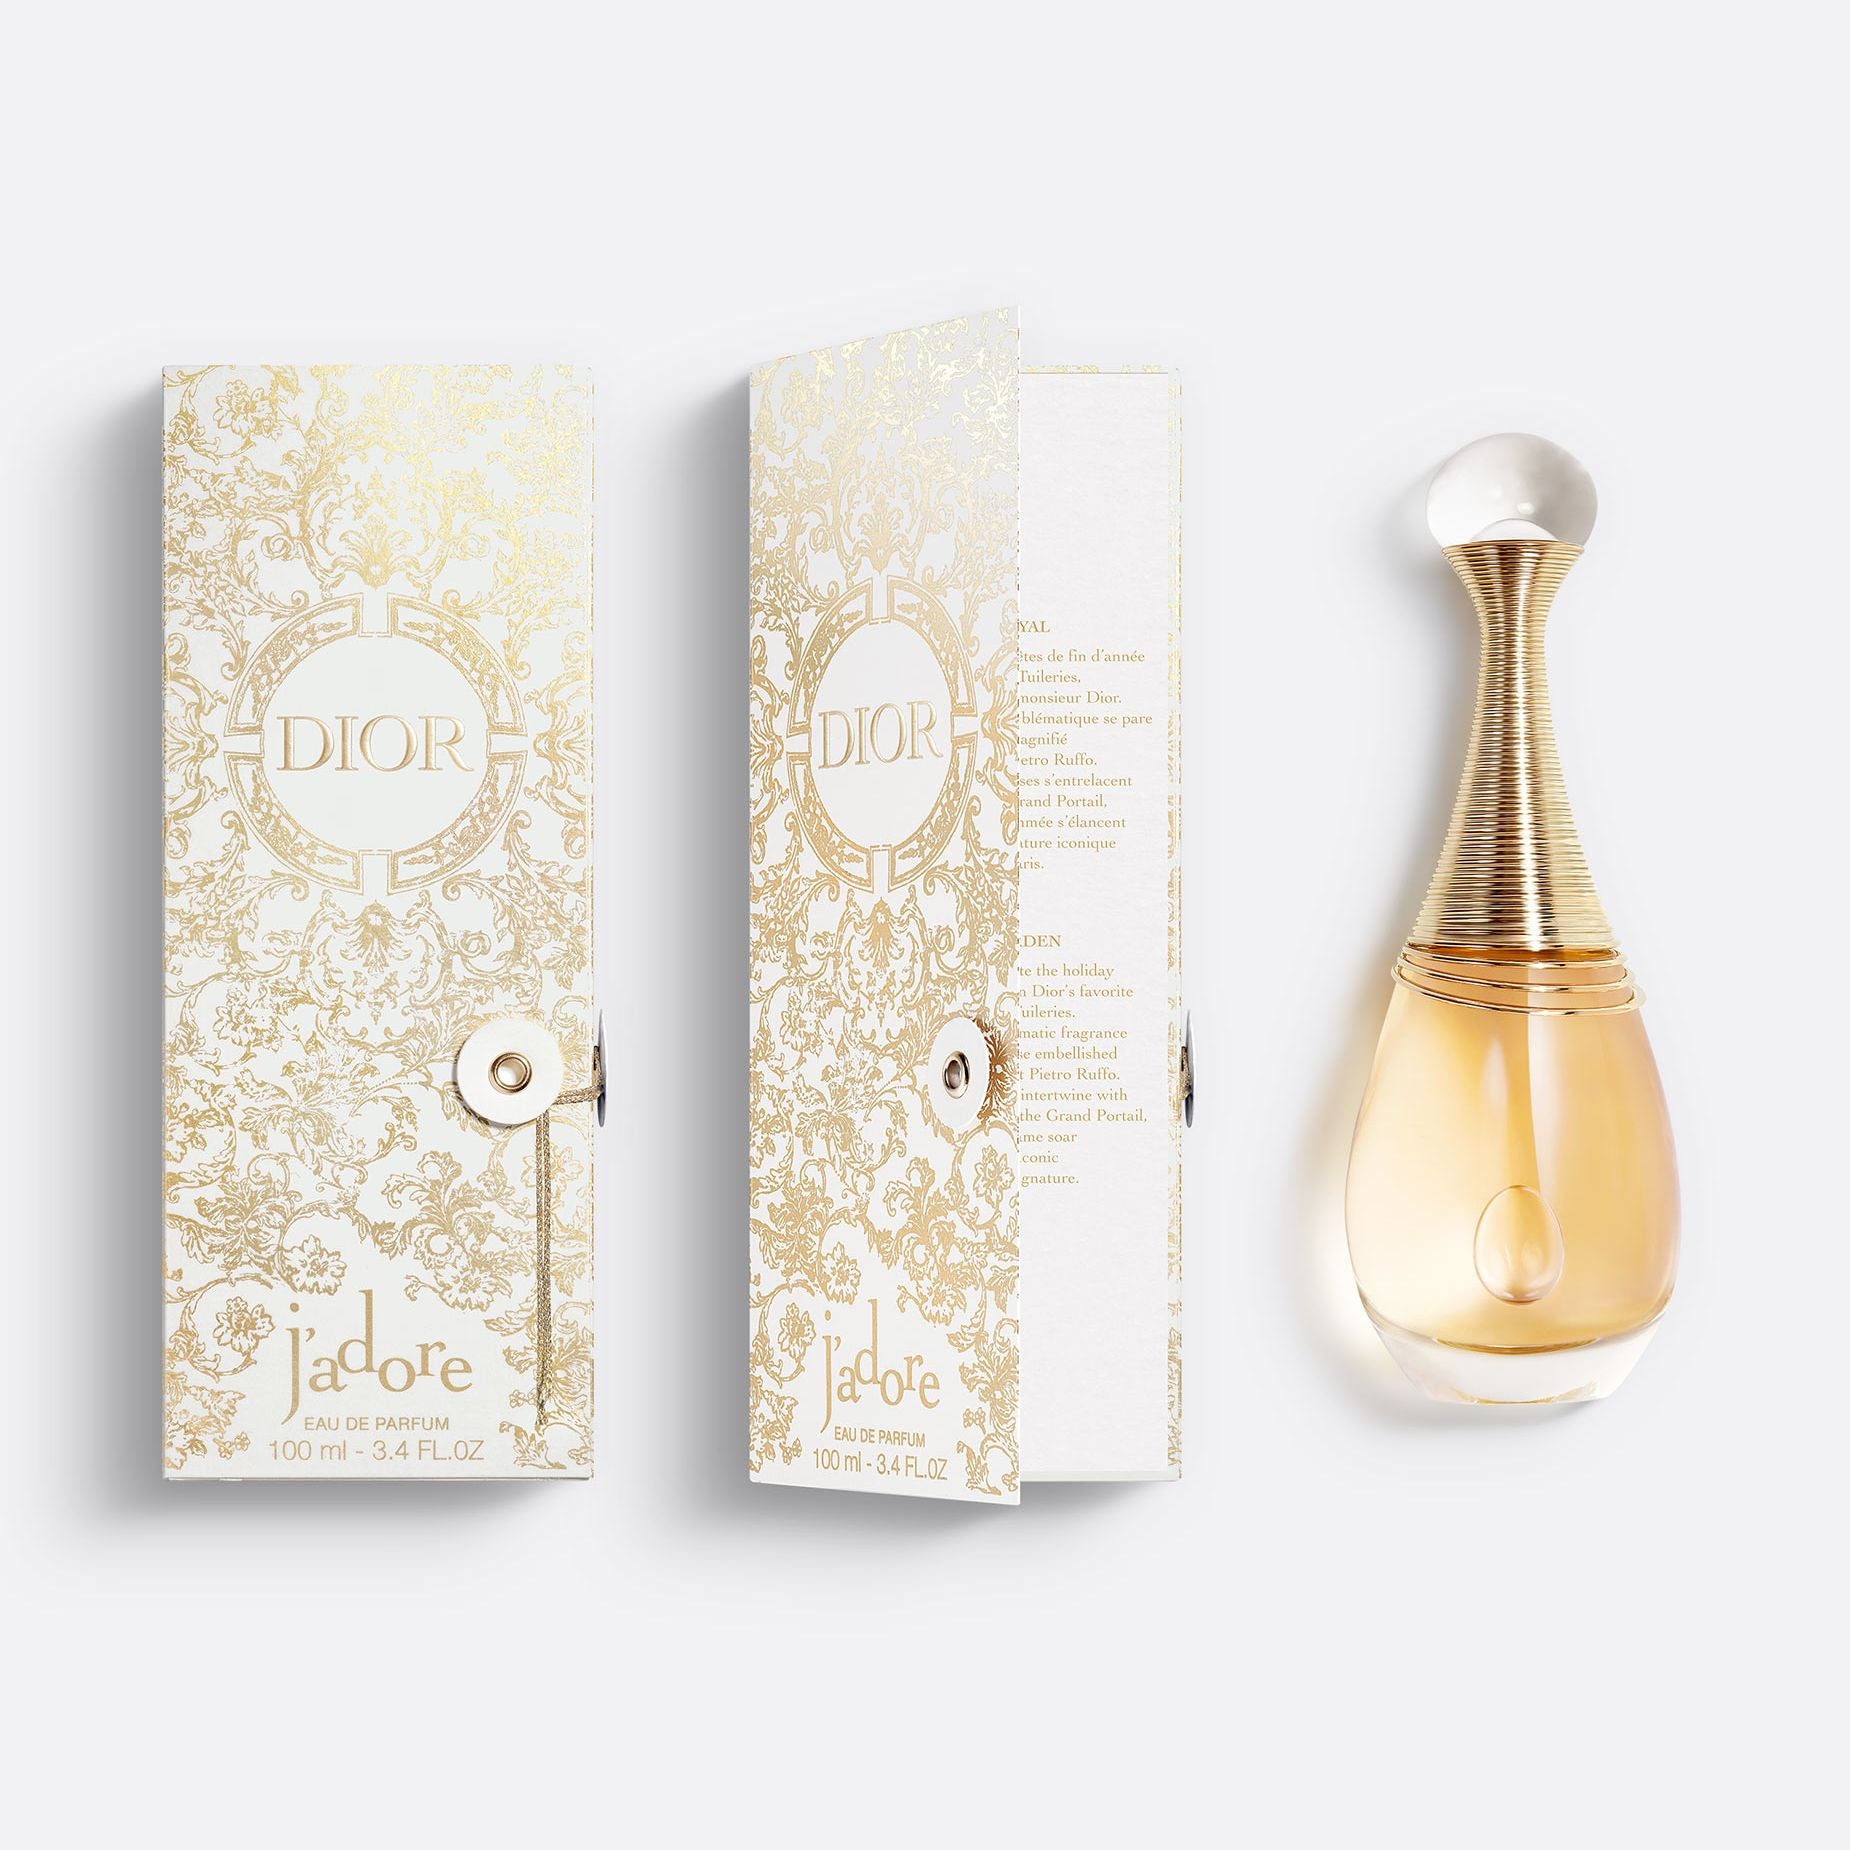 J’ADORE EAU DE PARFUM - LIMITED EDITION ~ Eau de Parfum - Floral and Sensual Notes - Gift Case